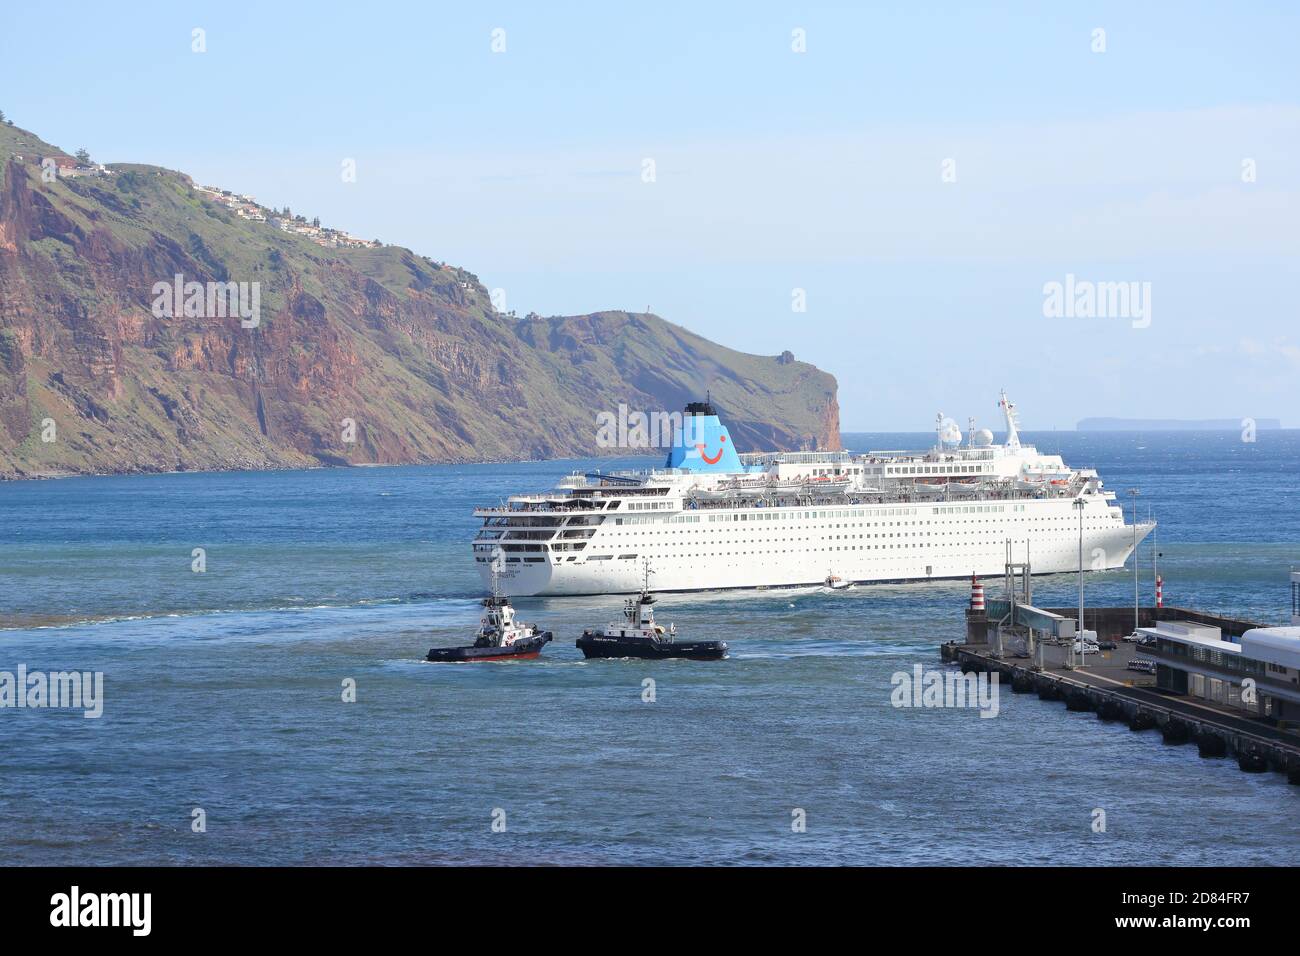 Après une courte visite du bateau de croisière MS Marella Dream quitte Madère, Portugal Banque D'Images